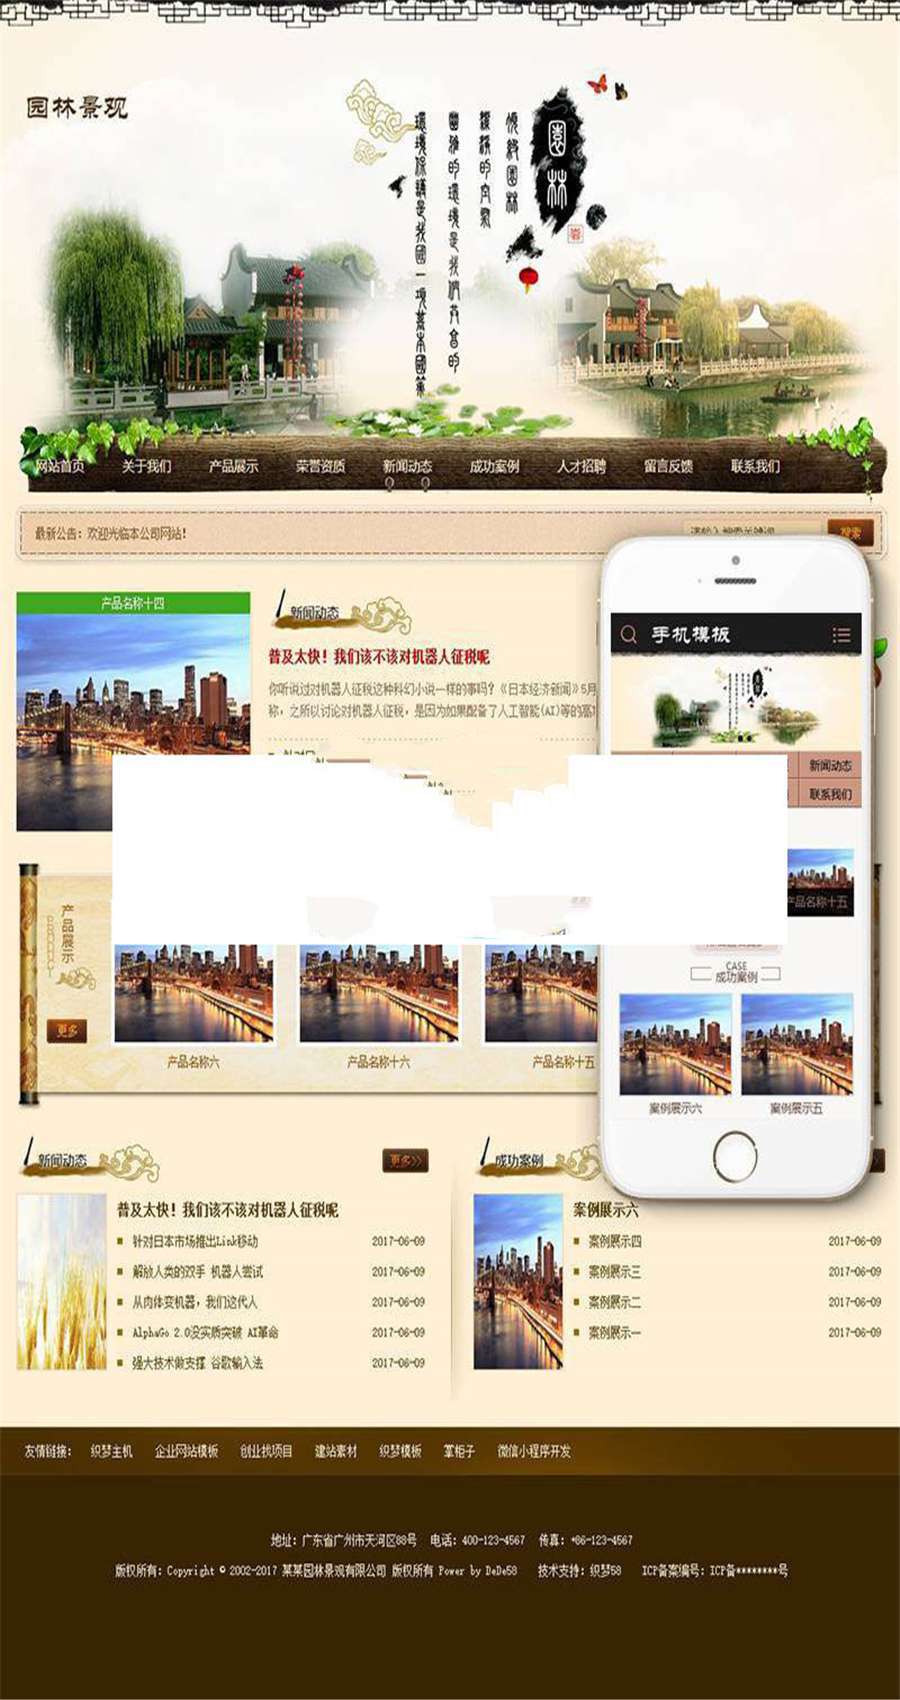 [整站源码]织梦dedecms市政园林景观苗木企业网站模板(带手机端)插图